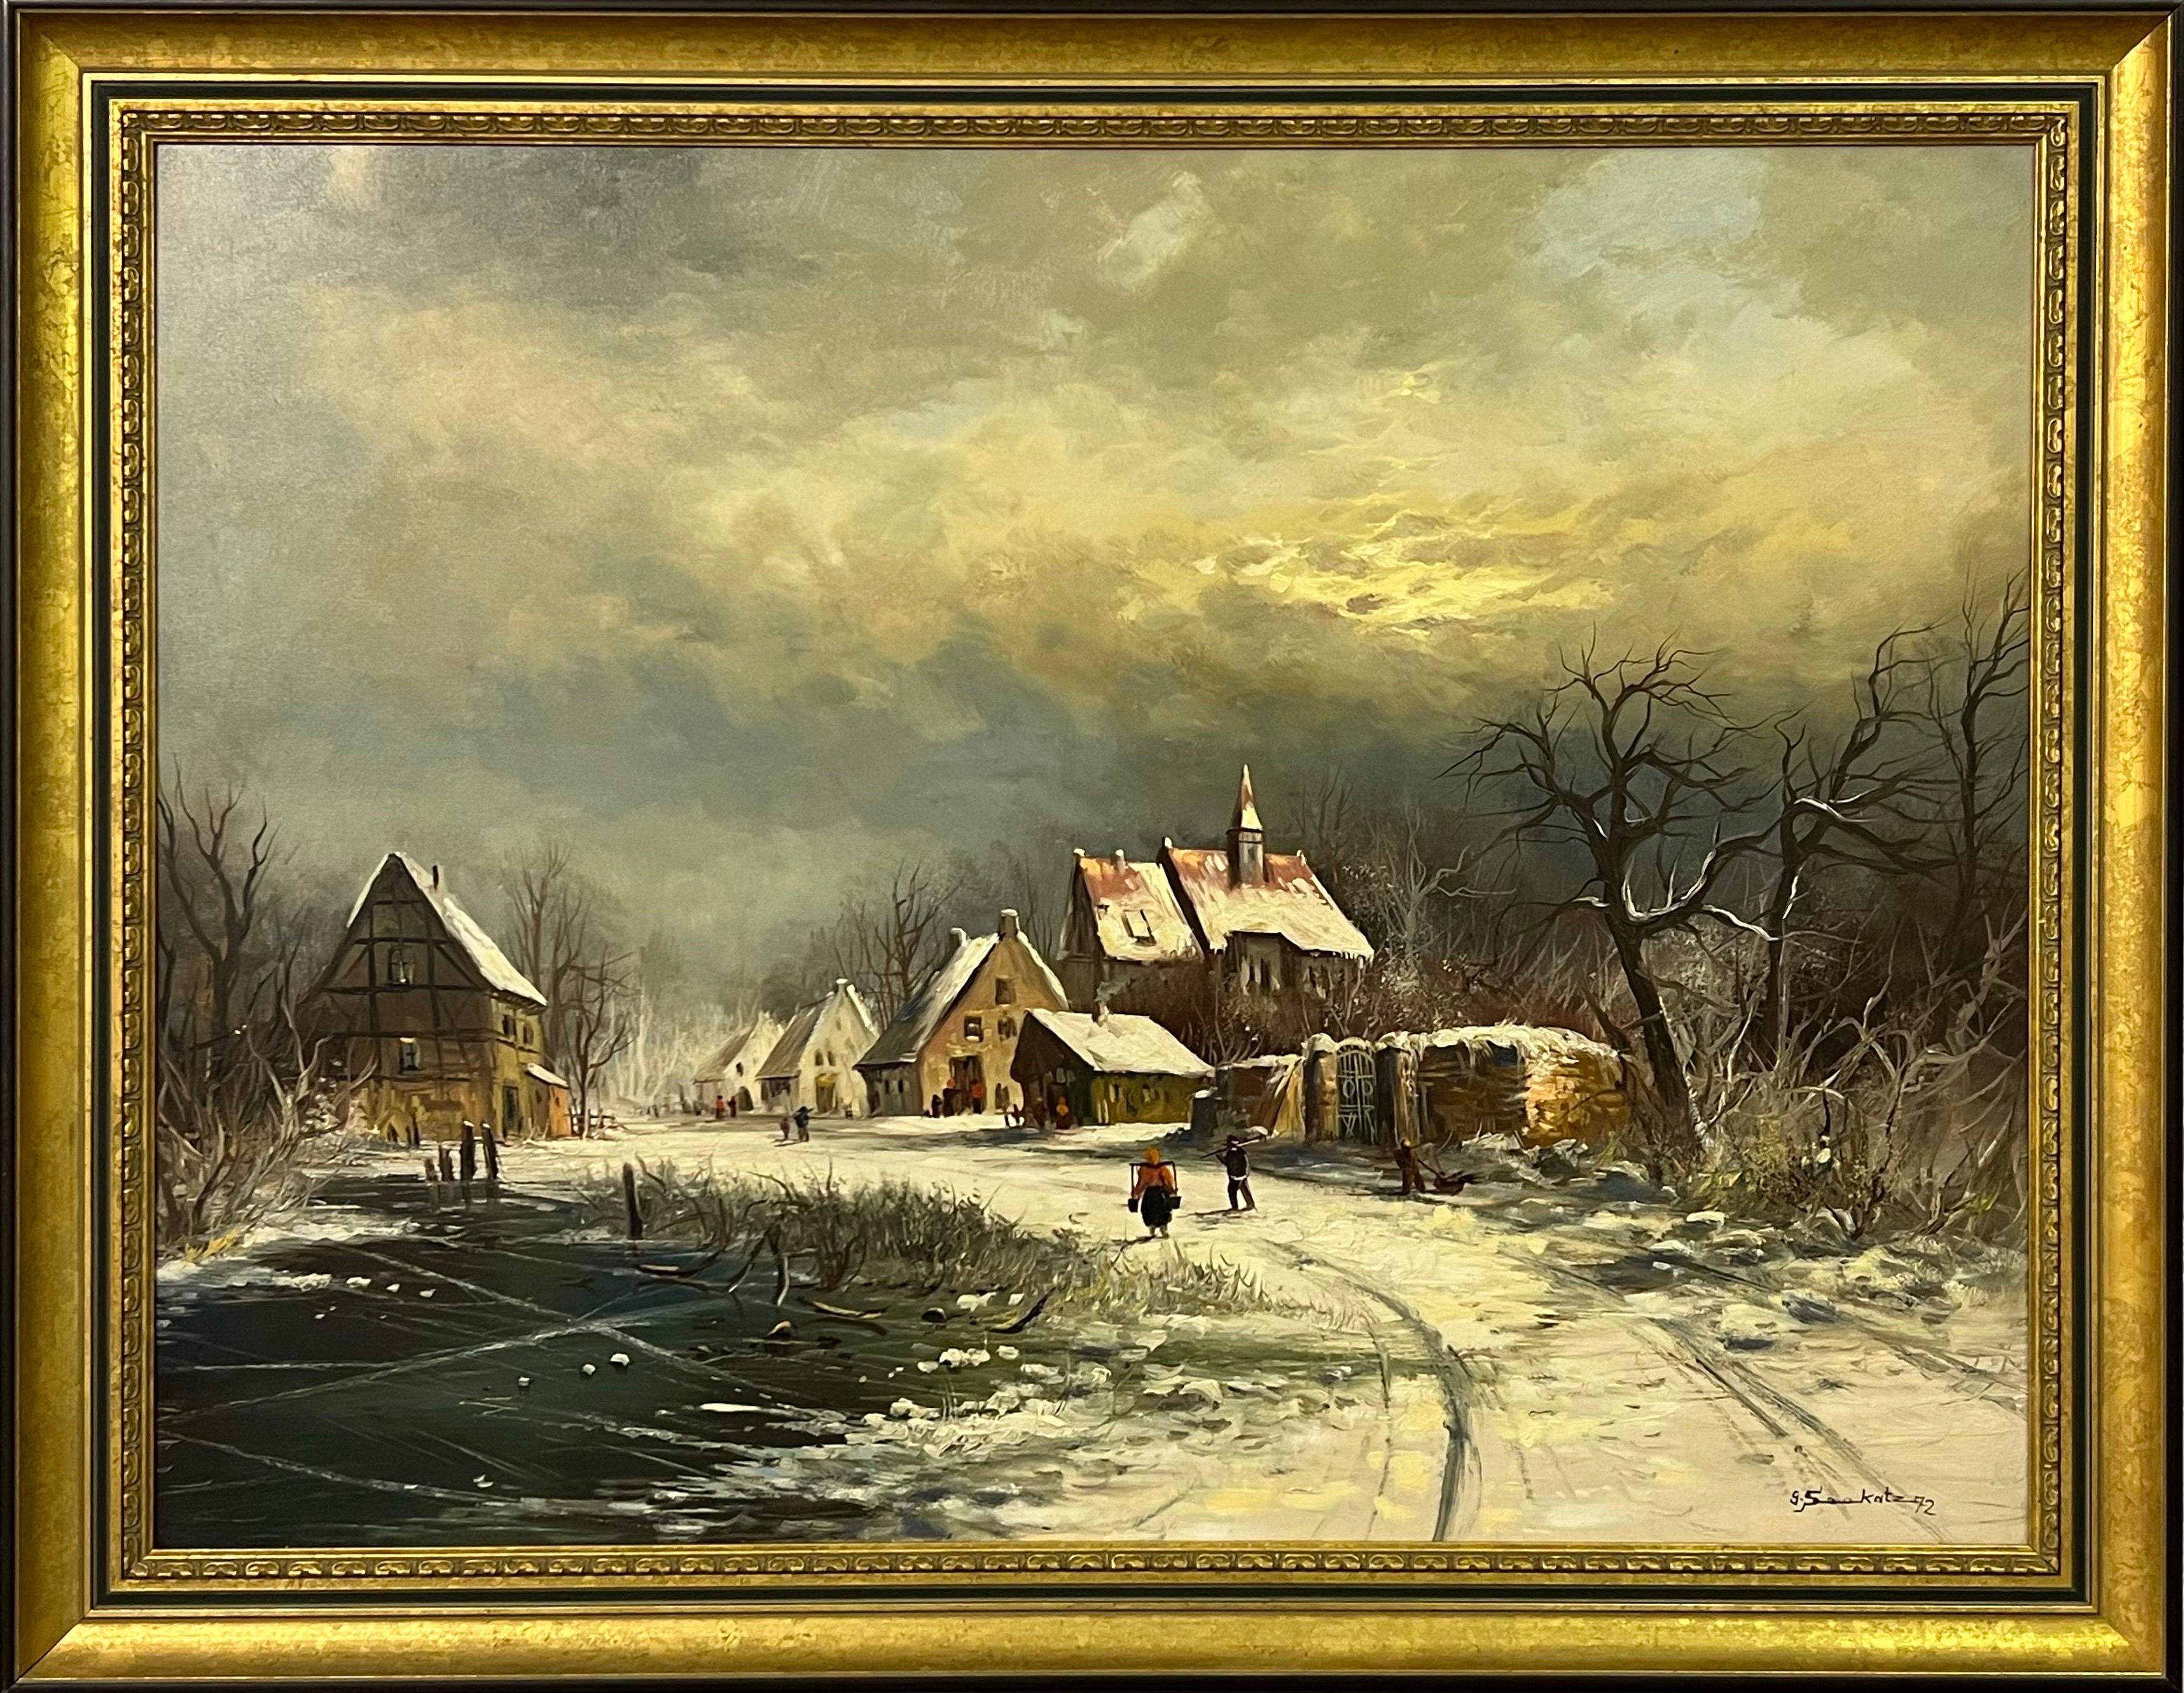 Gunter Seekatz Figurative Painting - European Village in Winter Snow with Figures & Frozen Pond by German Artist